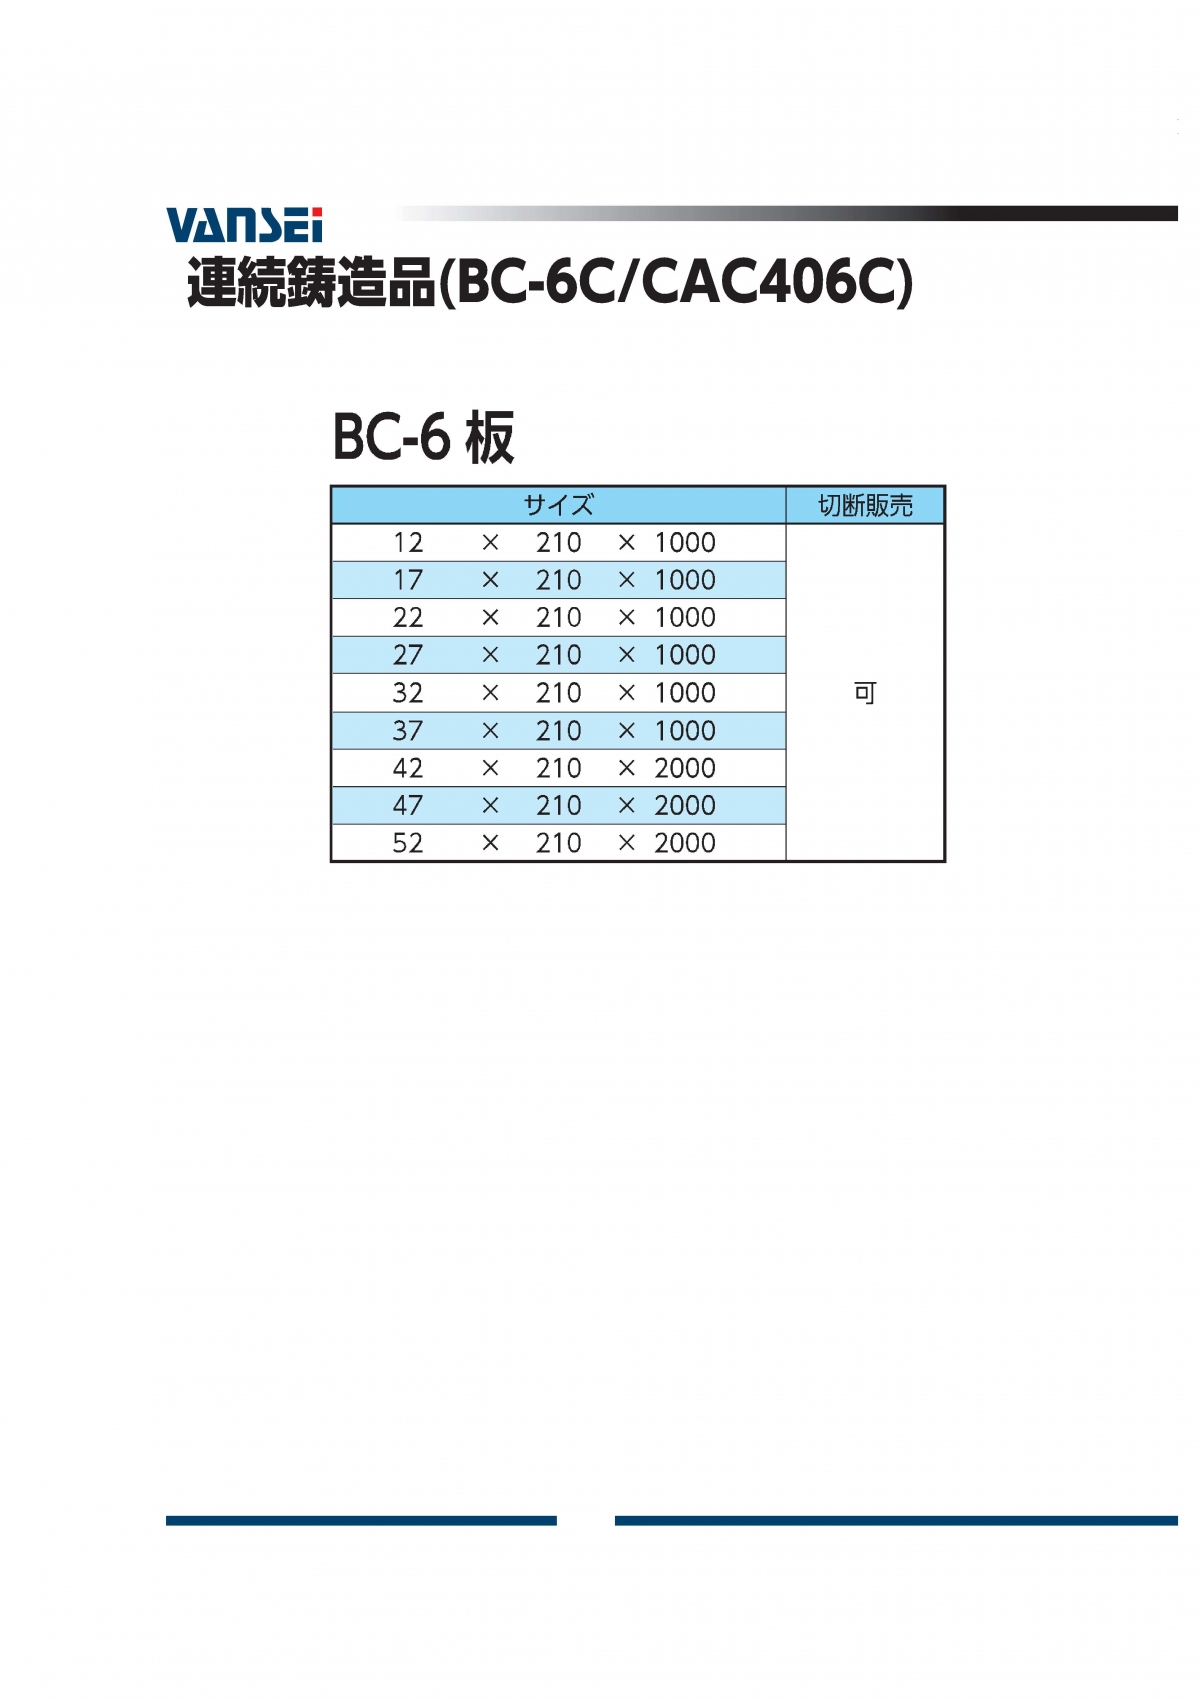 BC-6板(CAC406C)